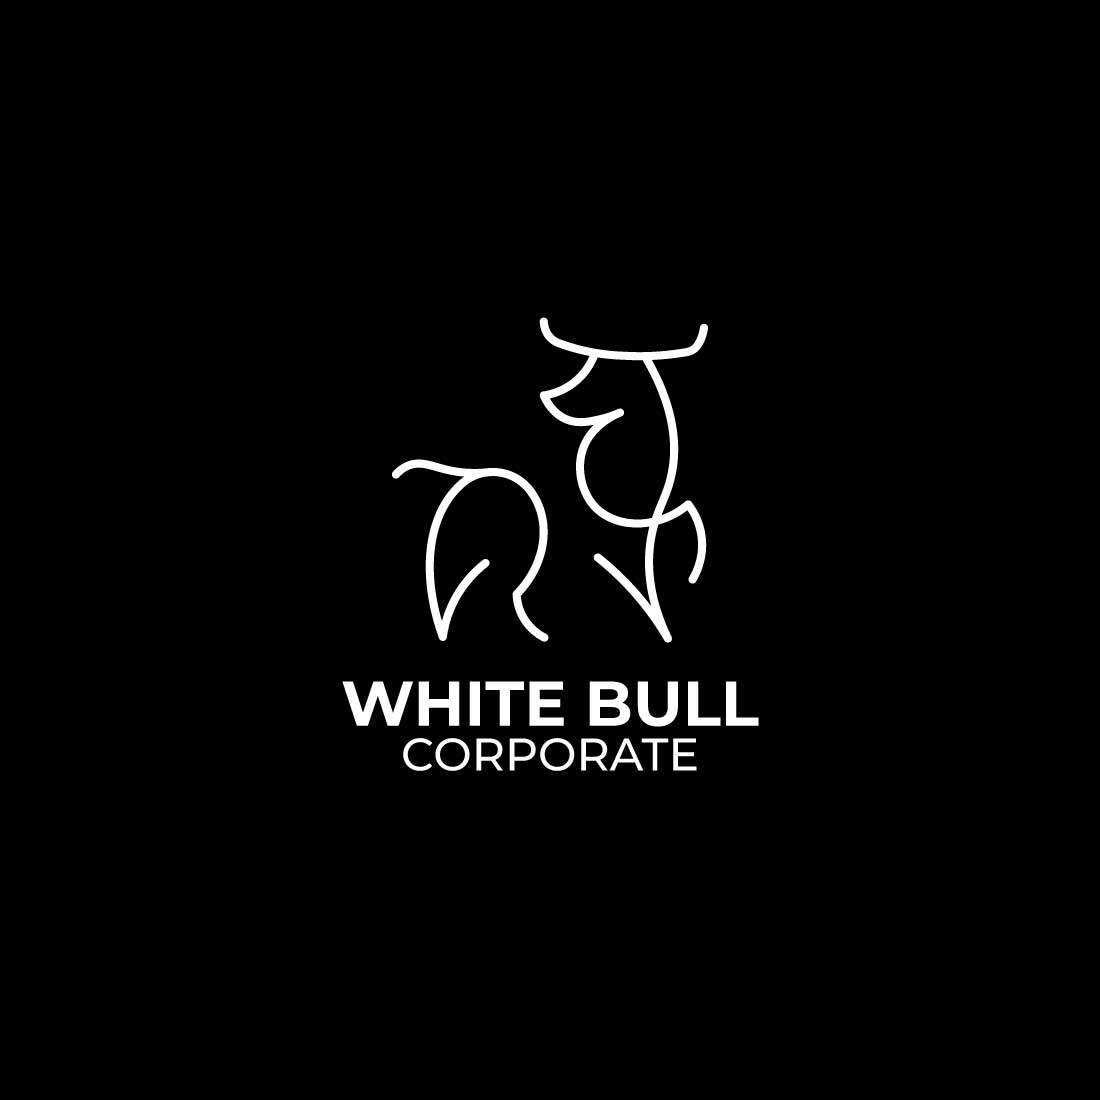 White bull logo vector design preview image.